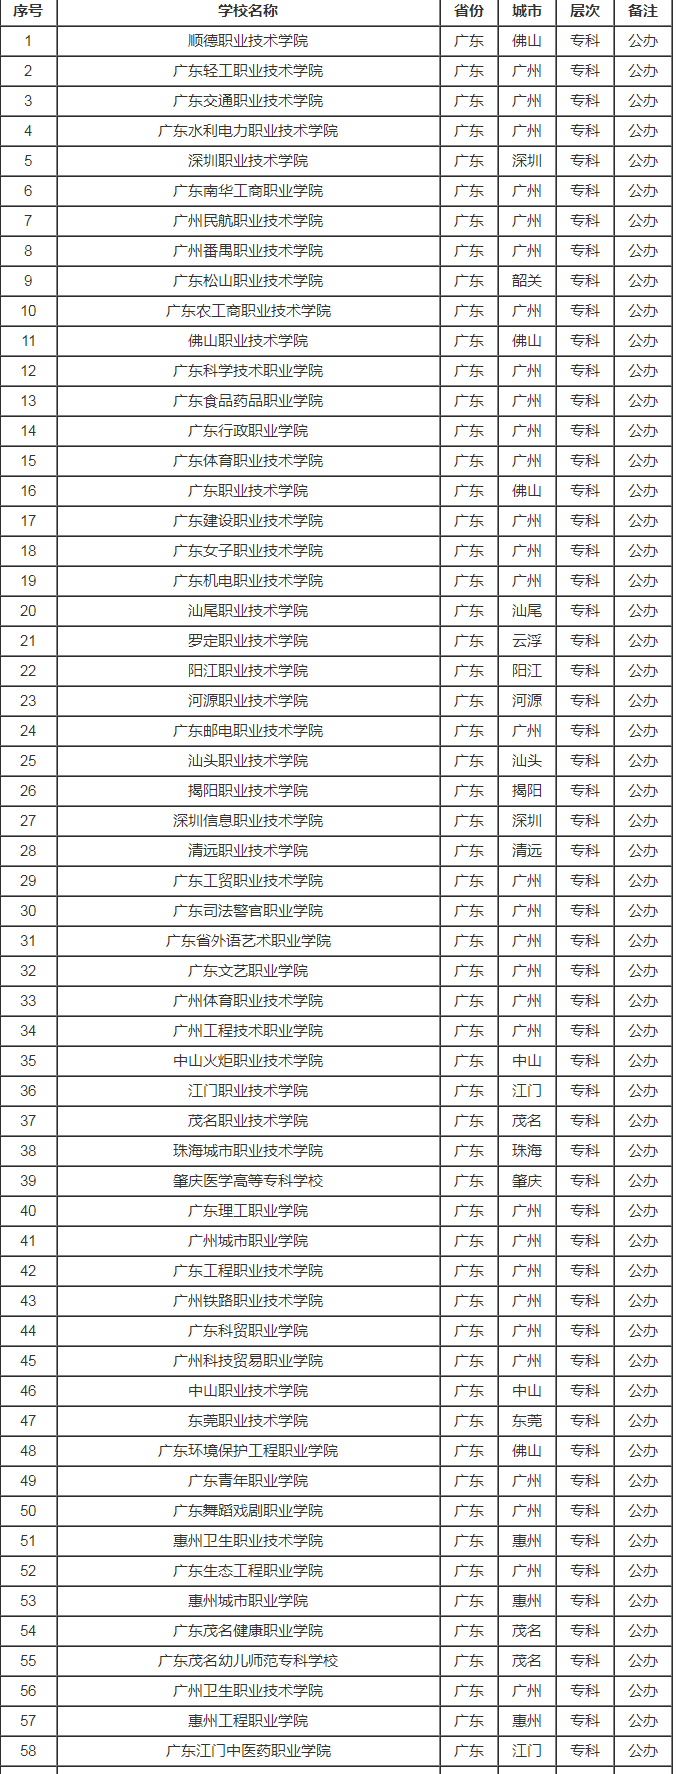 广东省高校名单一览表(最全版)